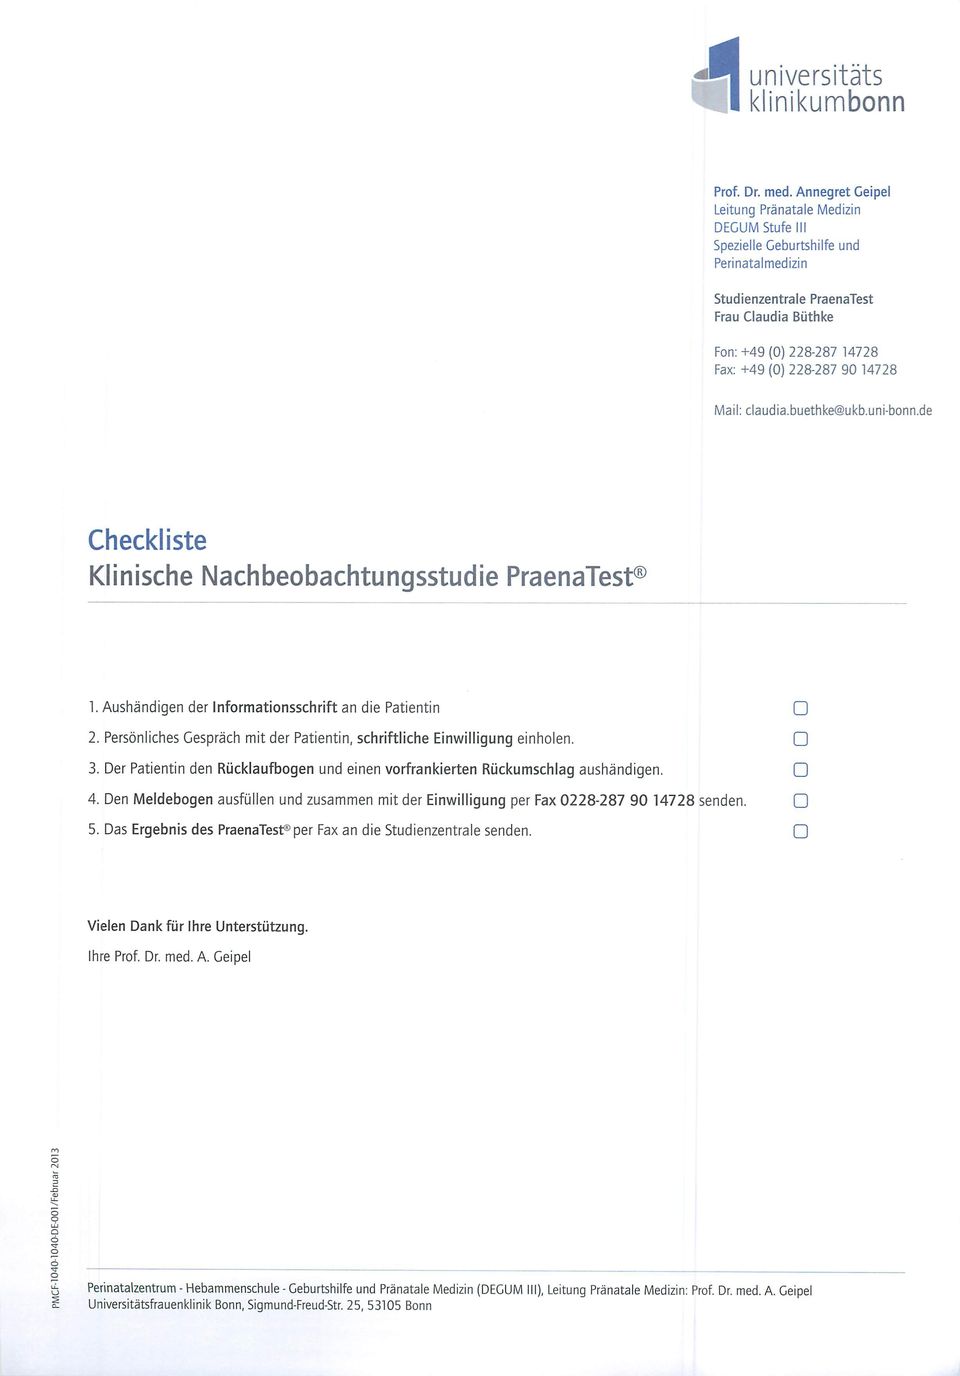 14728 Mail: claudia.buethke@ukb.uni-bonn.de Checkliste Klinische Nachbeobachtungsstudie PraenaTest 1. Aushändigen der Informationsschrift an die Patientin Q 2.